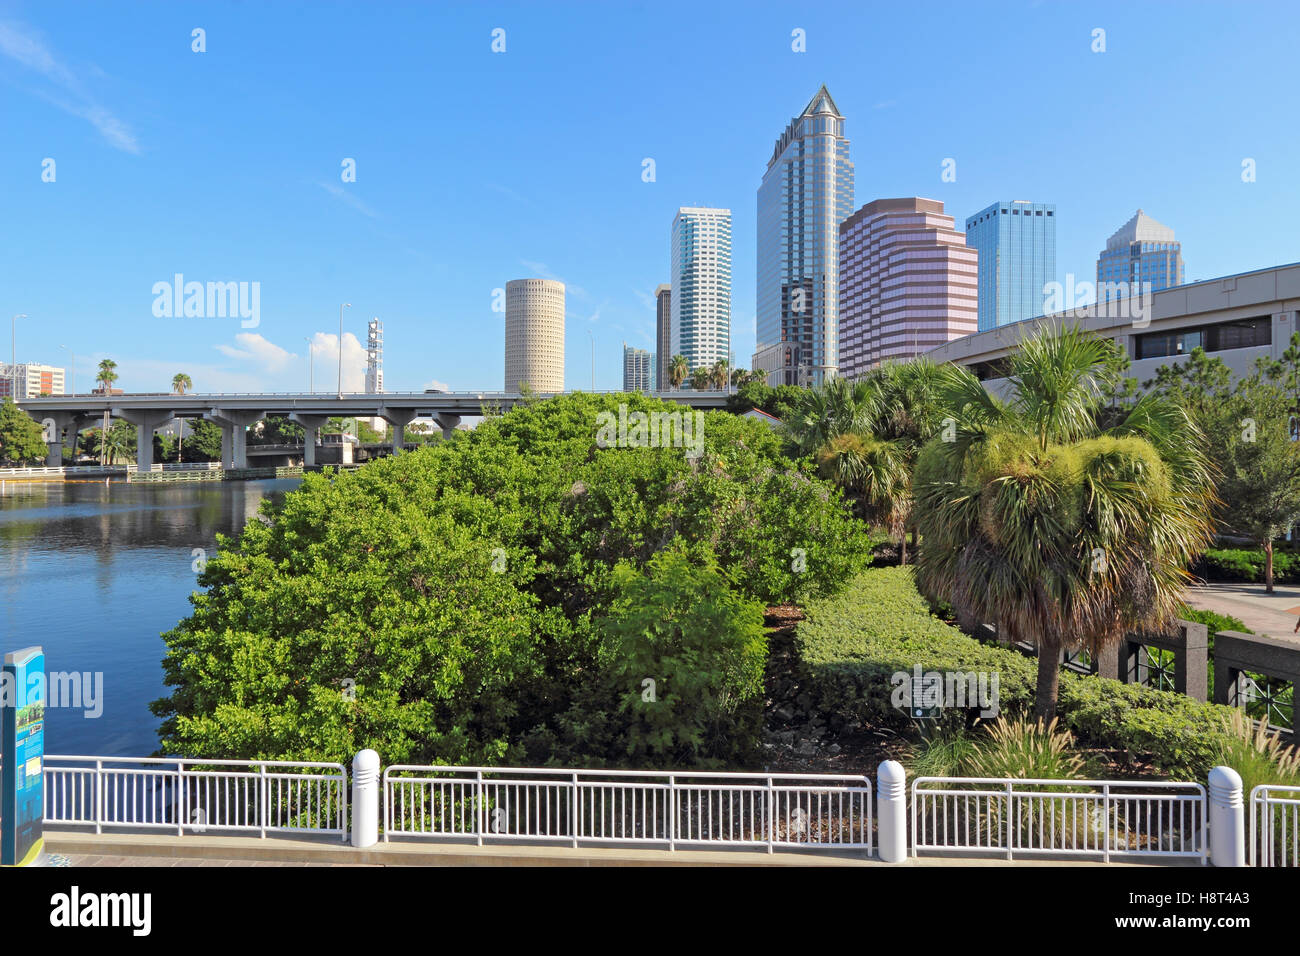 Tampa, Florida horizonte parcial con Riverwalk Park y edificios comerciales Foto de stock